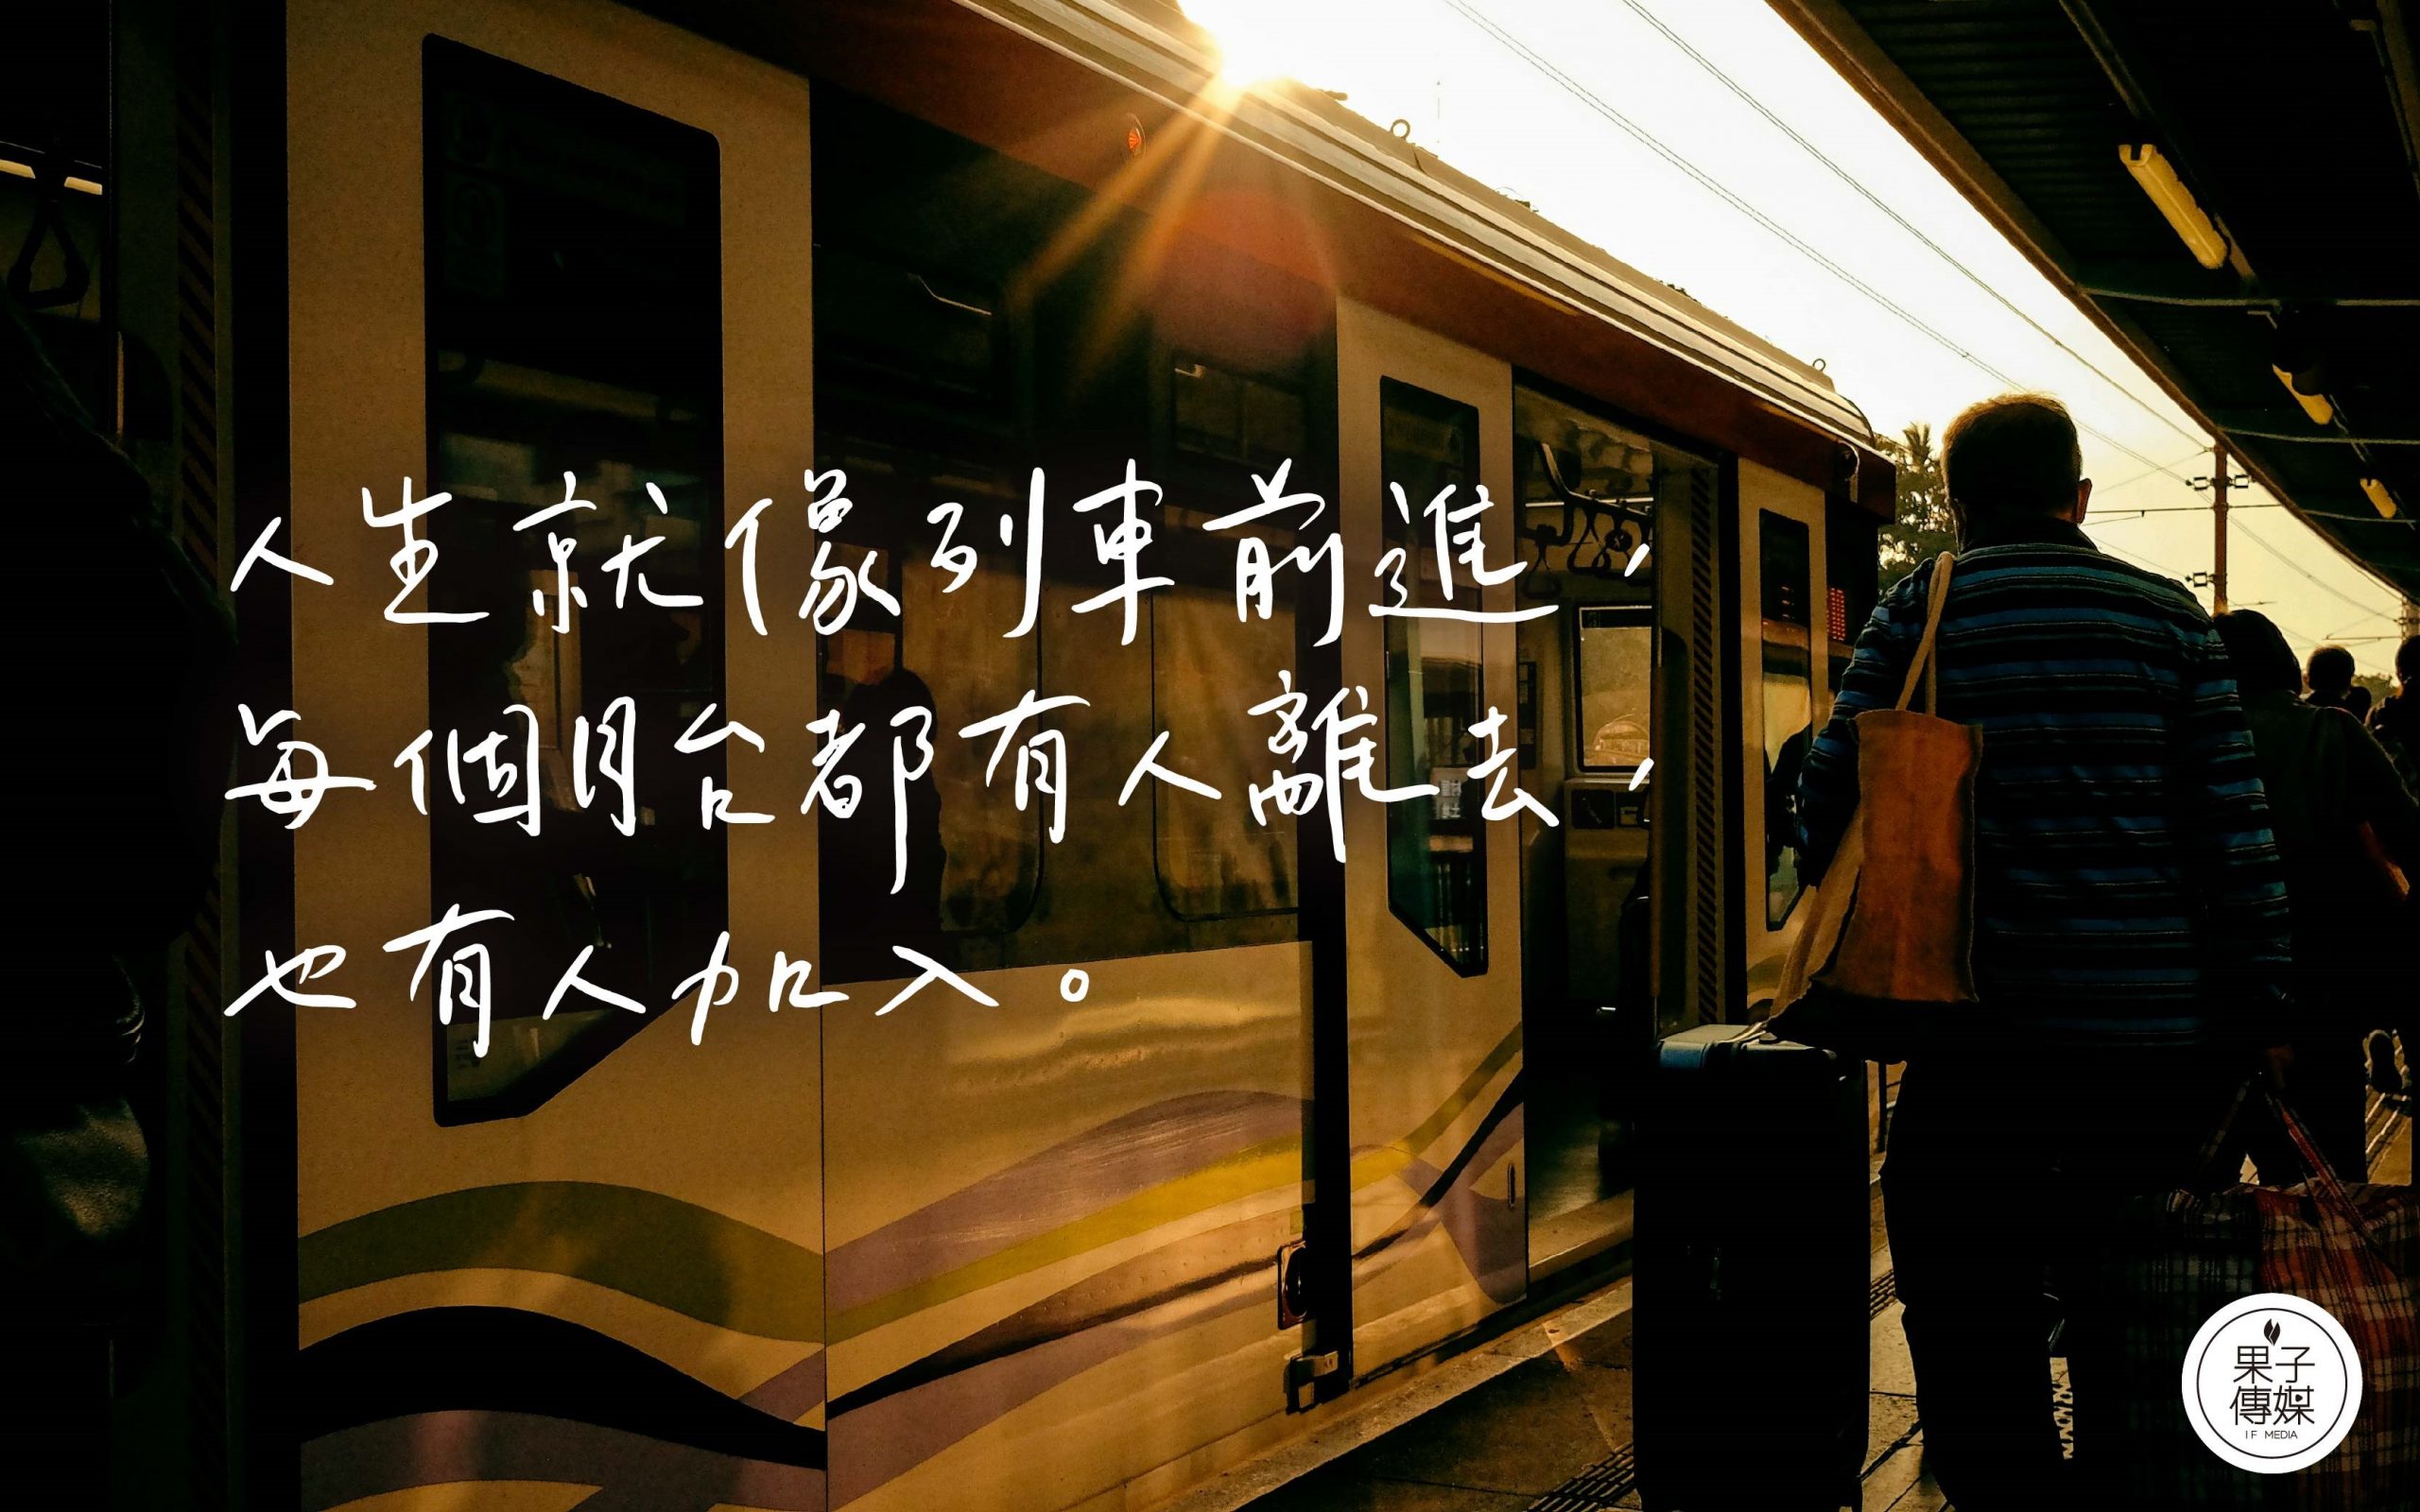 人生就像列車前進， 每個月台都有人離去，也有人加入